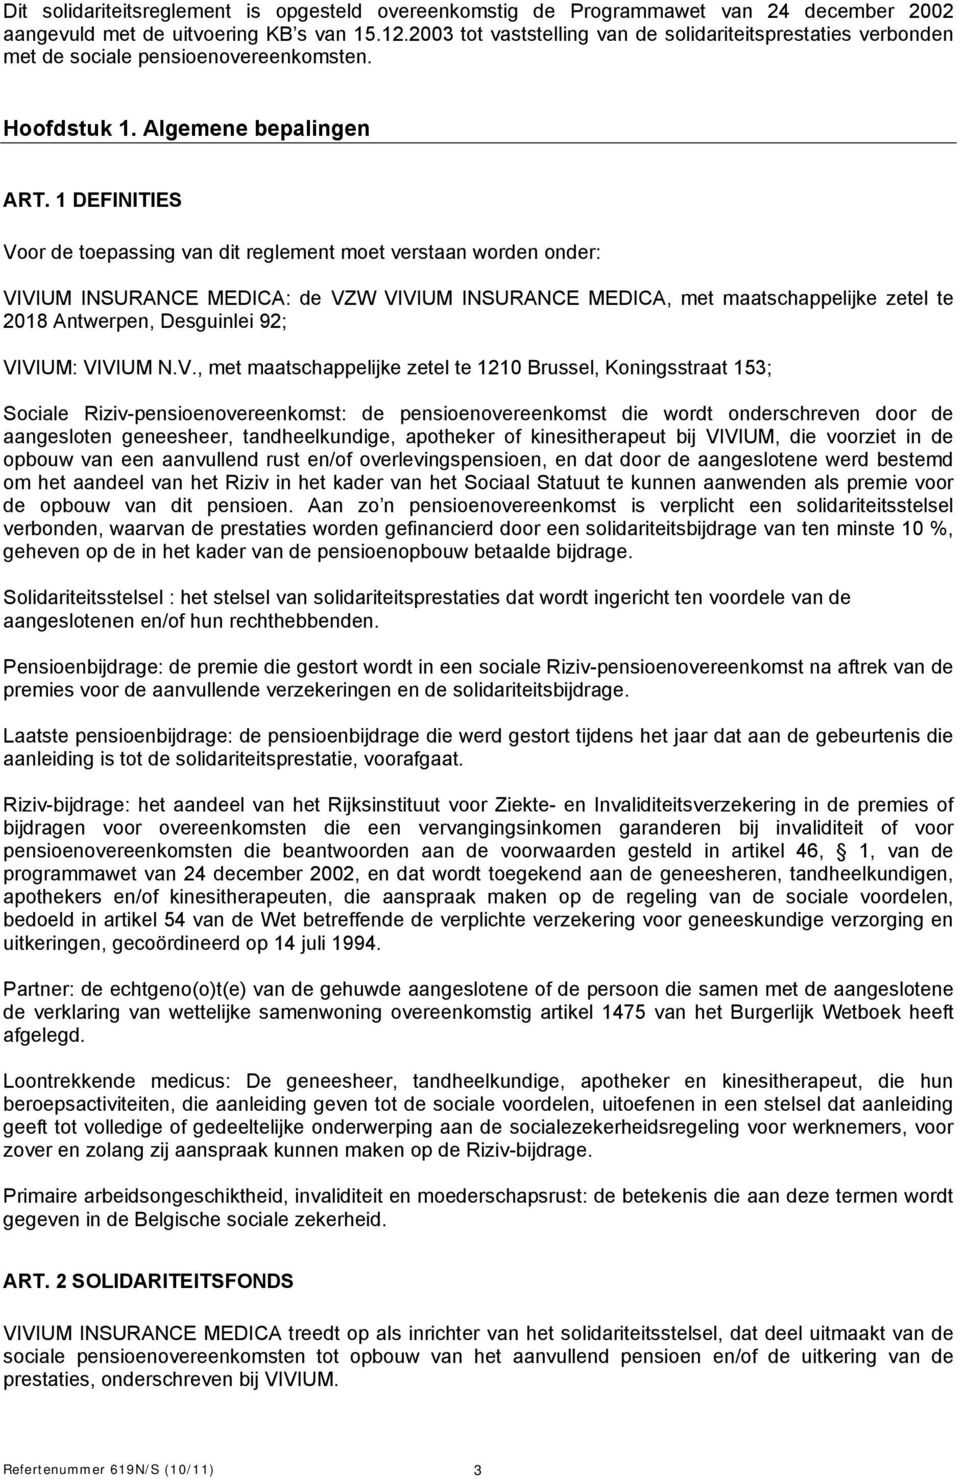 1 DEFINITIES Voor de toepassing van dit reglement moet verstaan worden onder: VIVIUM INSURANCE MEDICA: de VZW VIVIUM INSURANCE MEDICA, met maatschappelijke zetel te 2018 Antwerpen, Desguinlei 92;